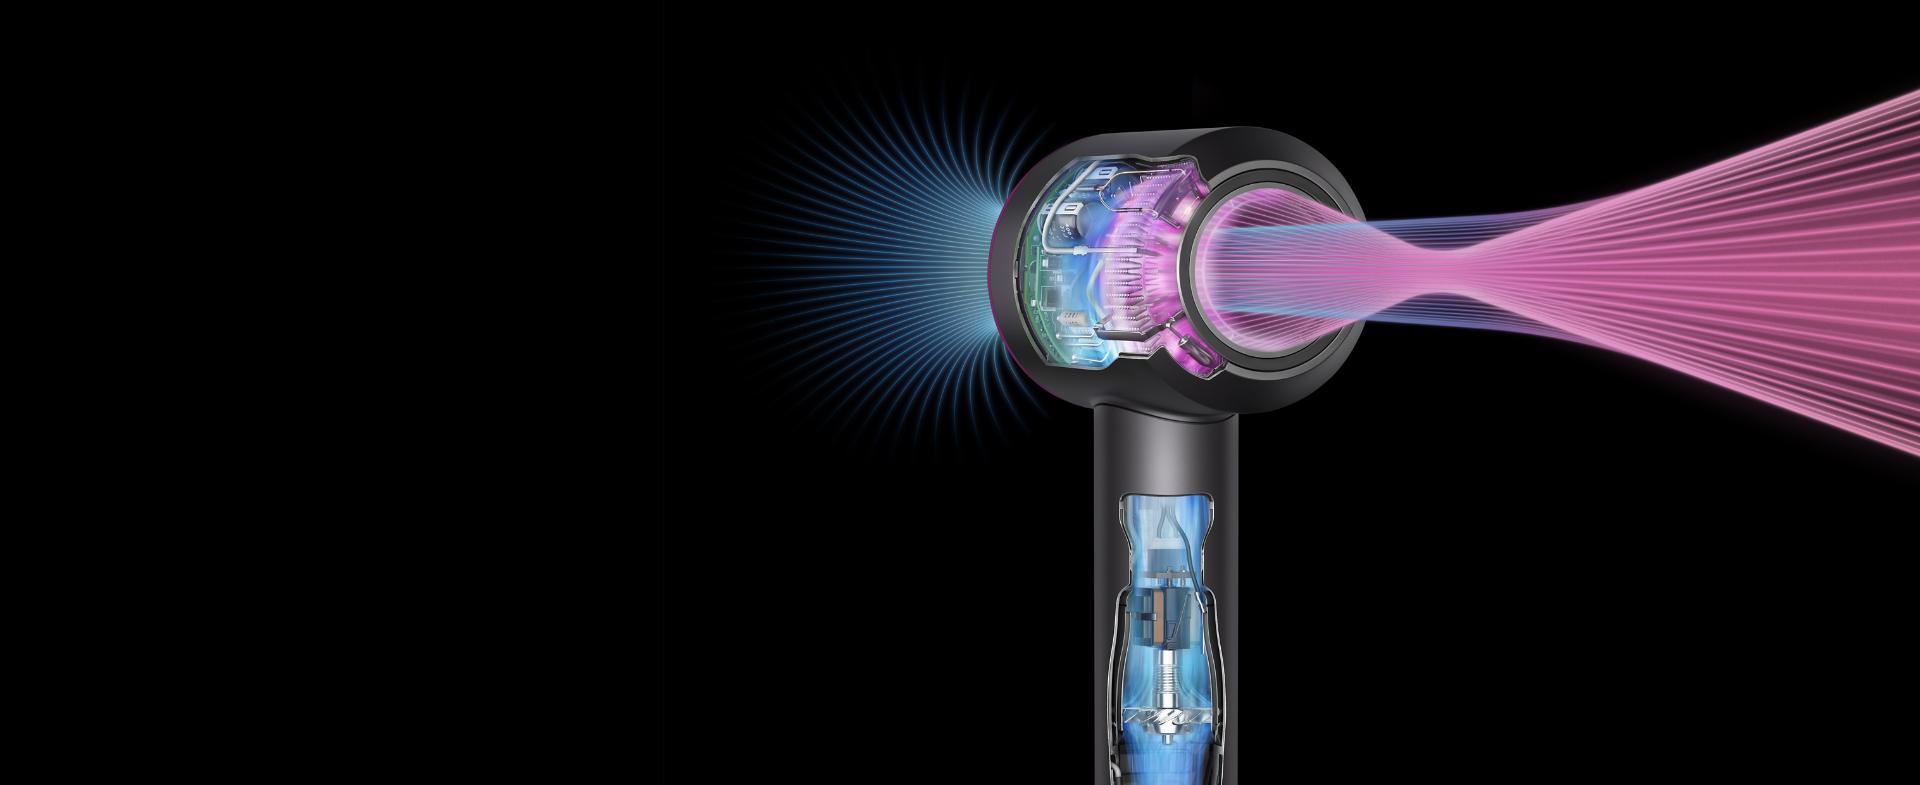 Dyson Supersonic saç kurutma makinesinin içinde bulunan teknolojinin röntgeni